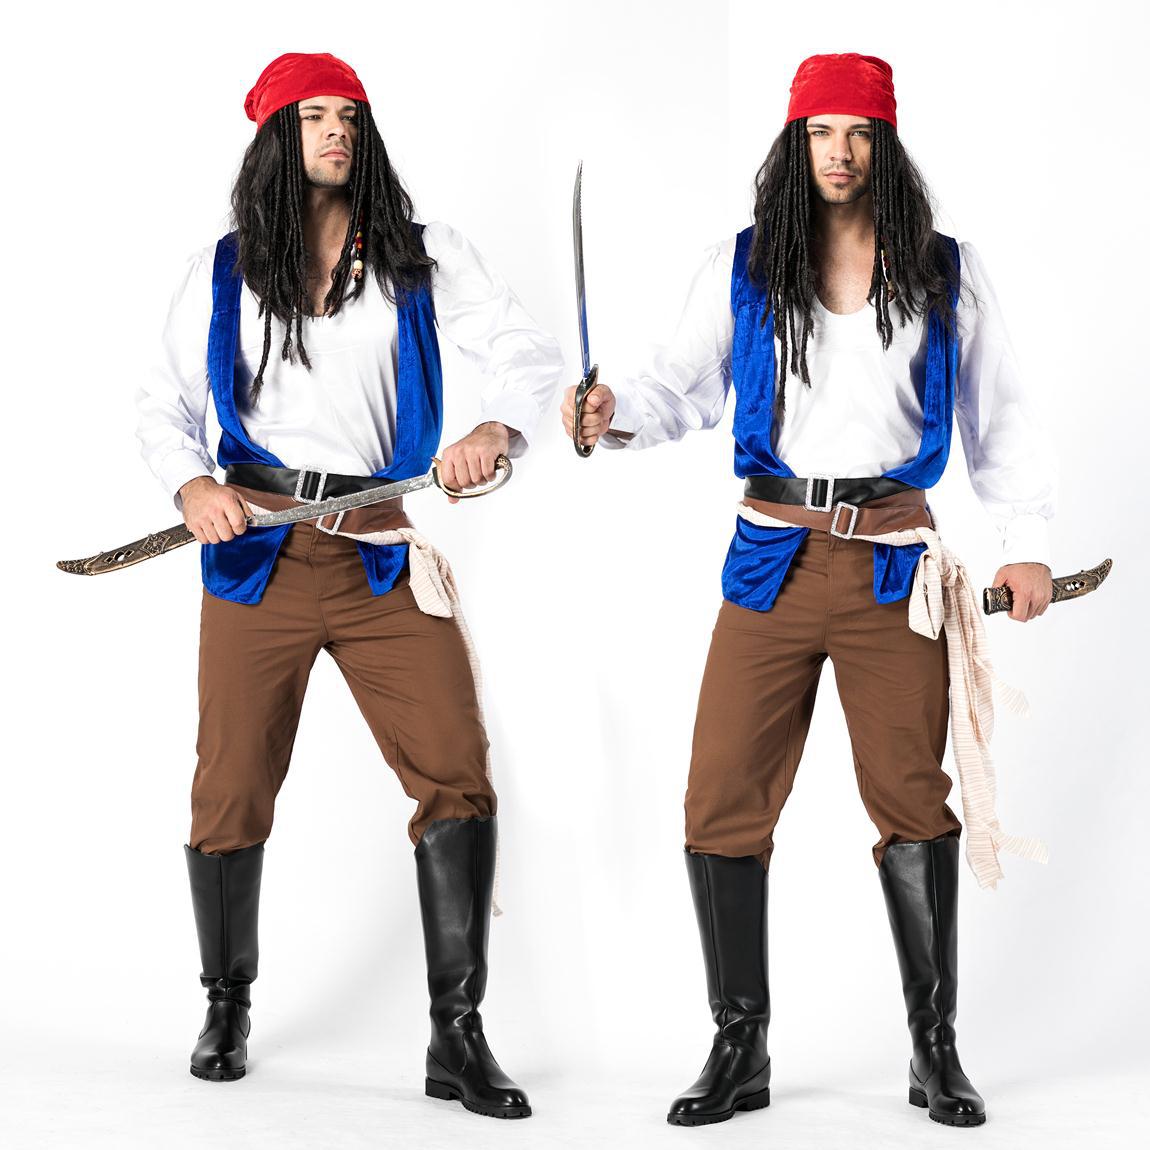 万圣节男装杰克海盗角色扮演海盗装 加勒比海盗服装 男装海盗服